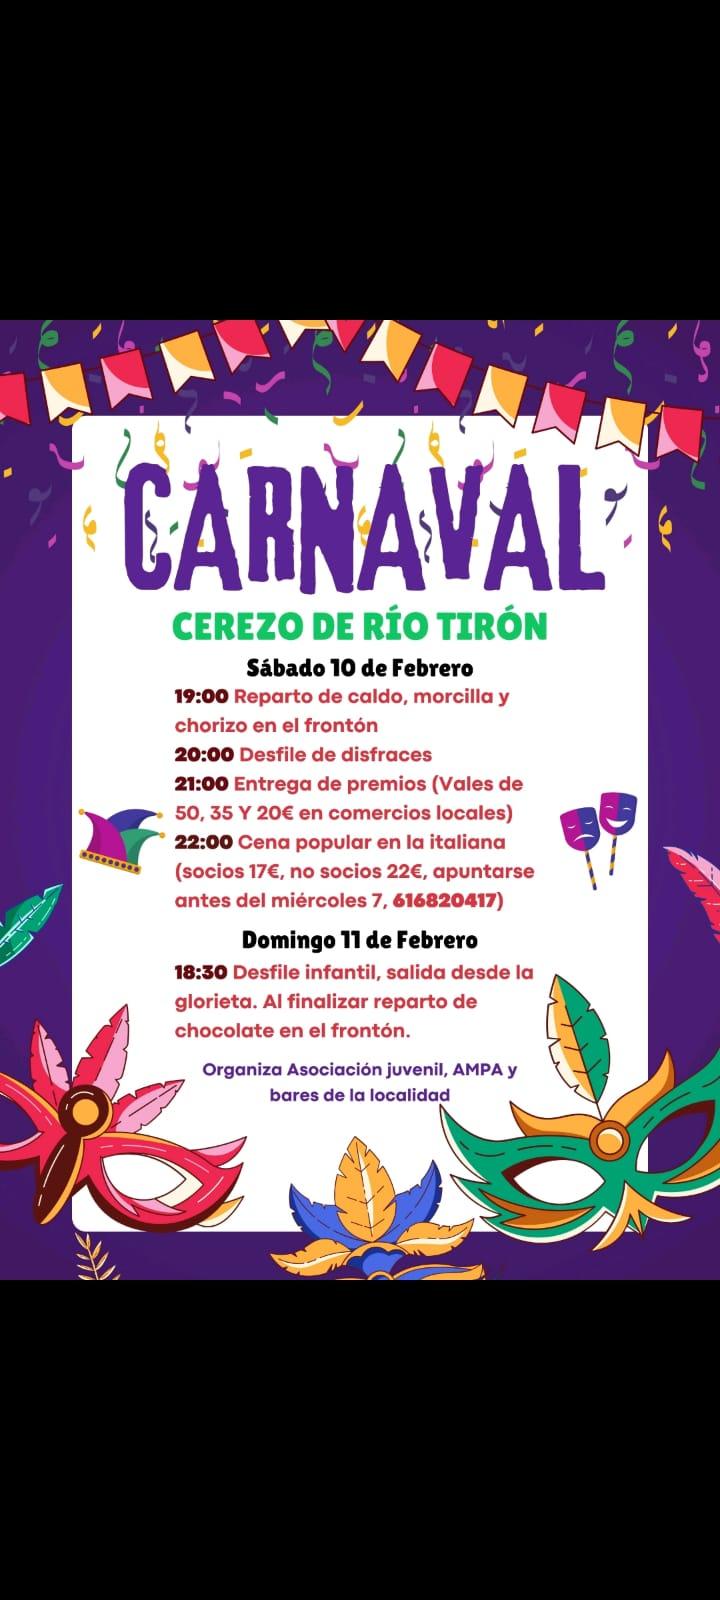 Carnaval. Cerezo de Río Tirón